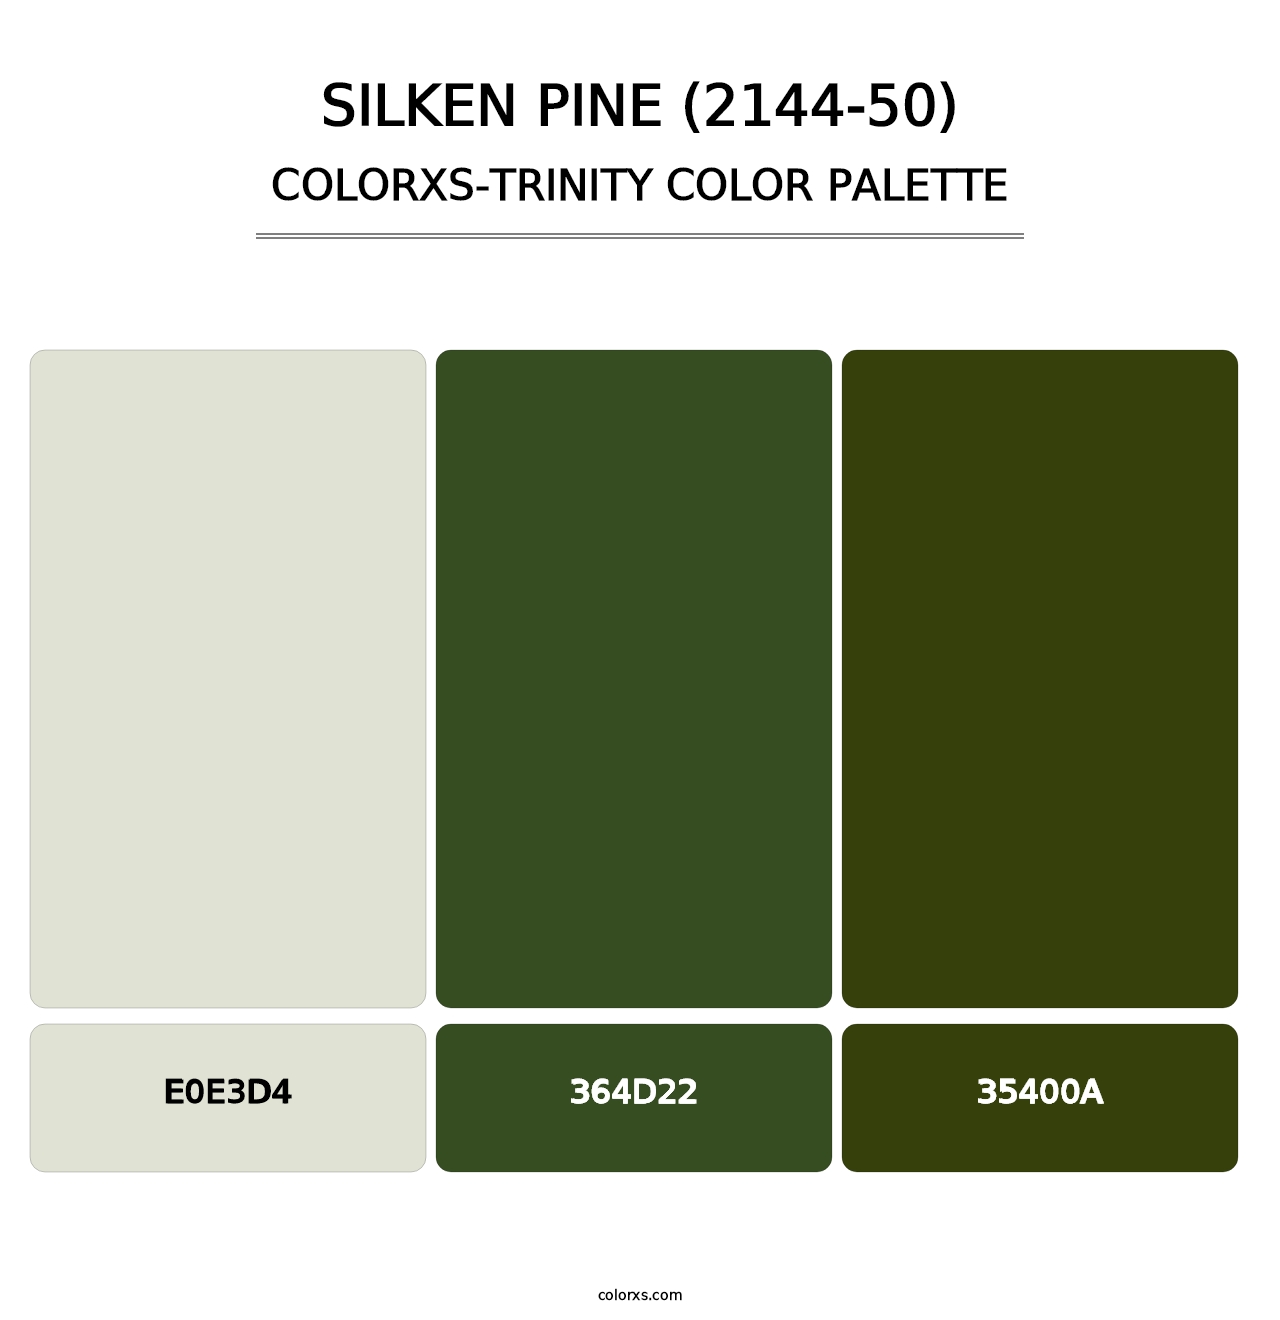 Silken Pine (2144-50) - Colorxs Trinity Palette